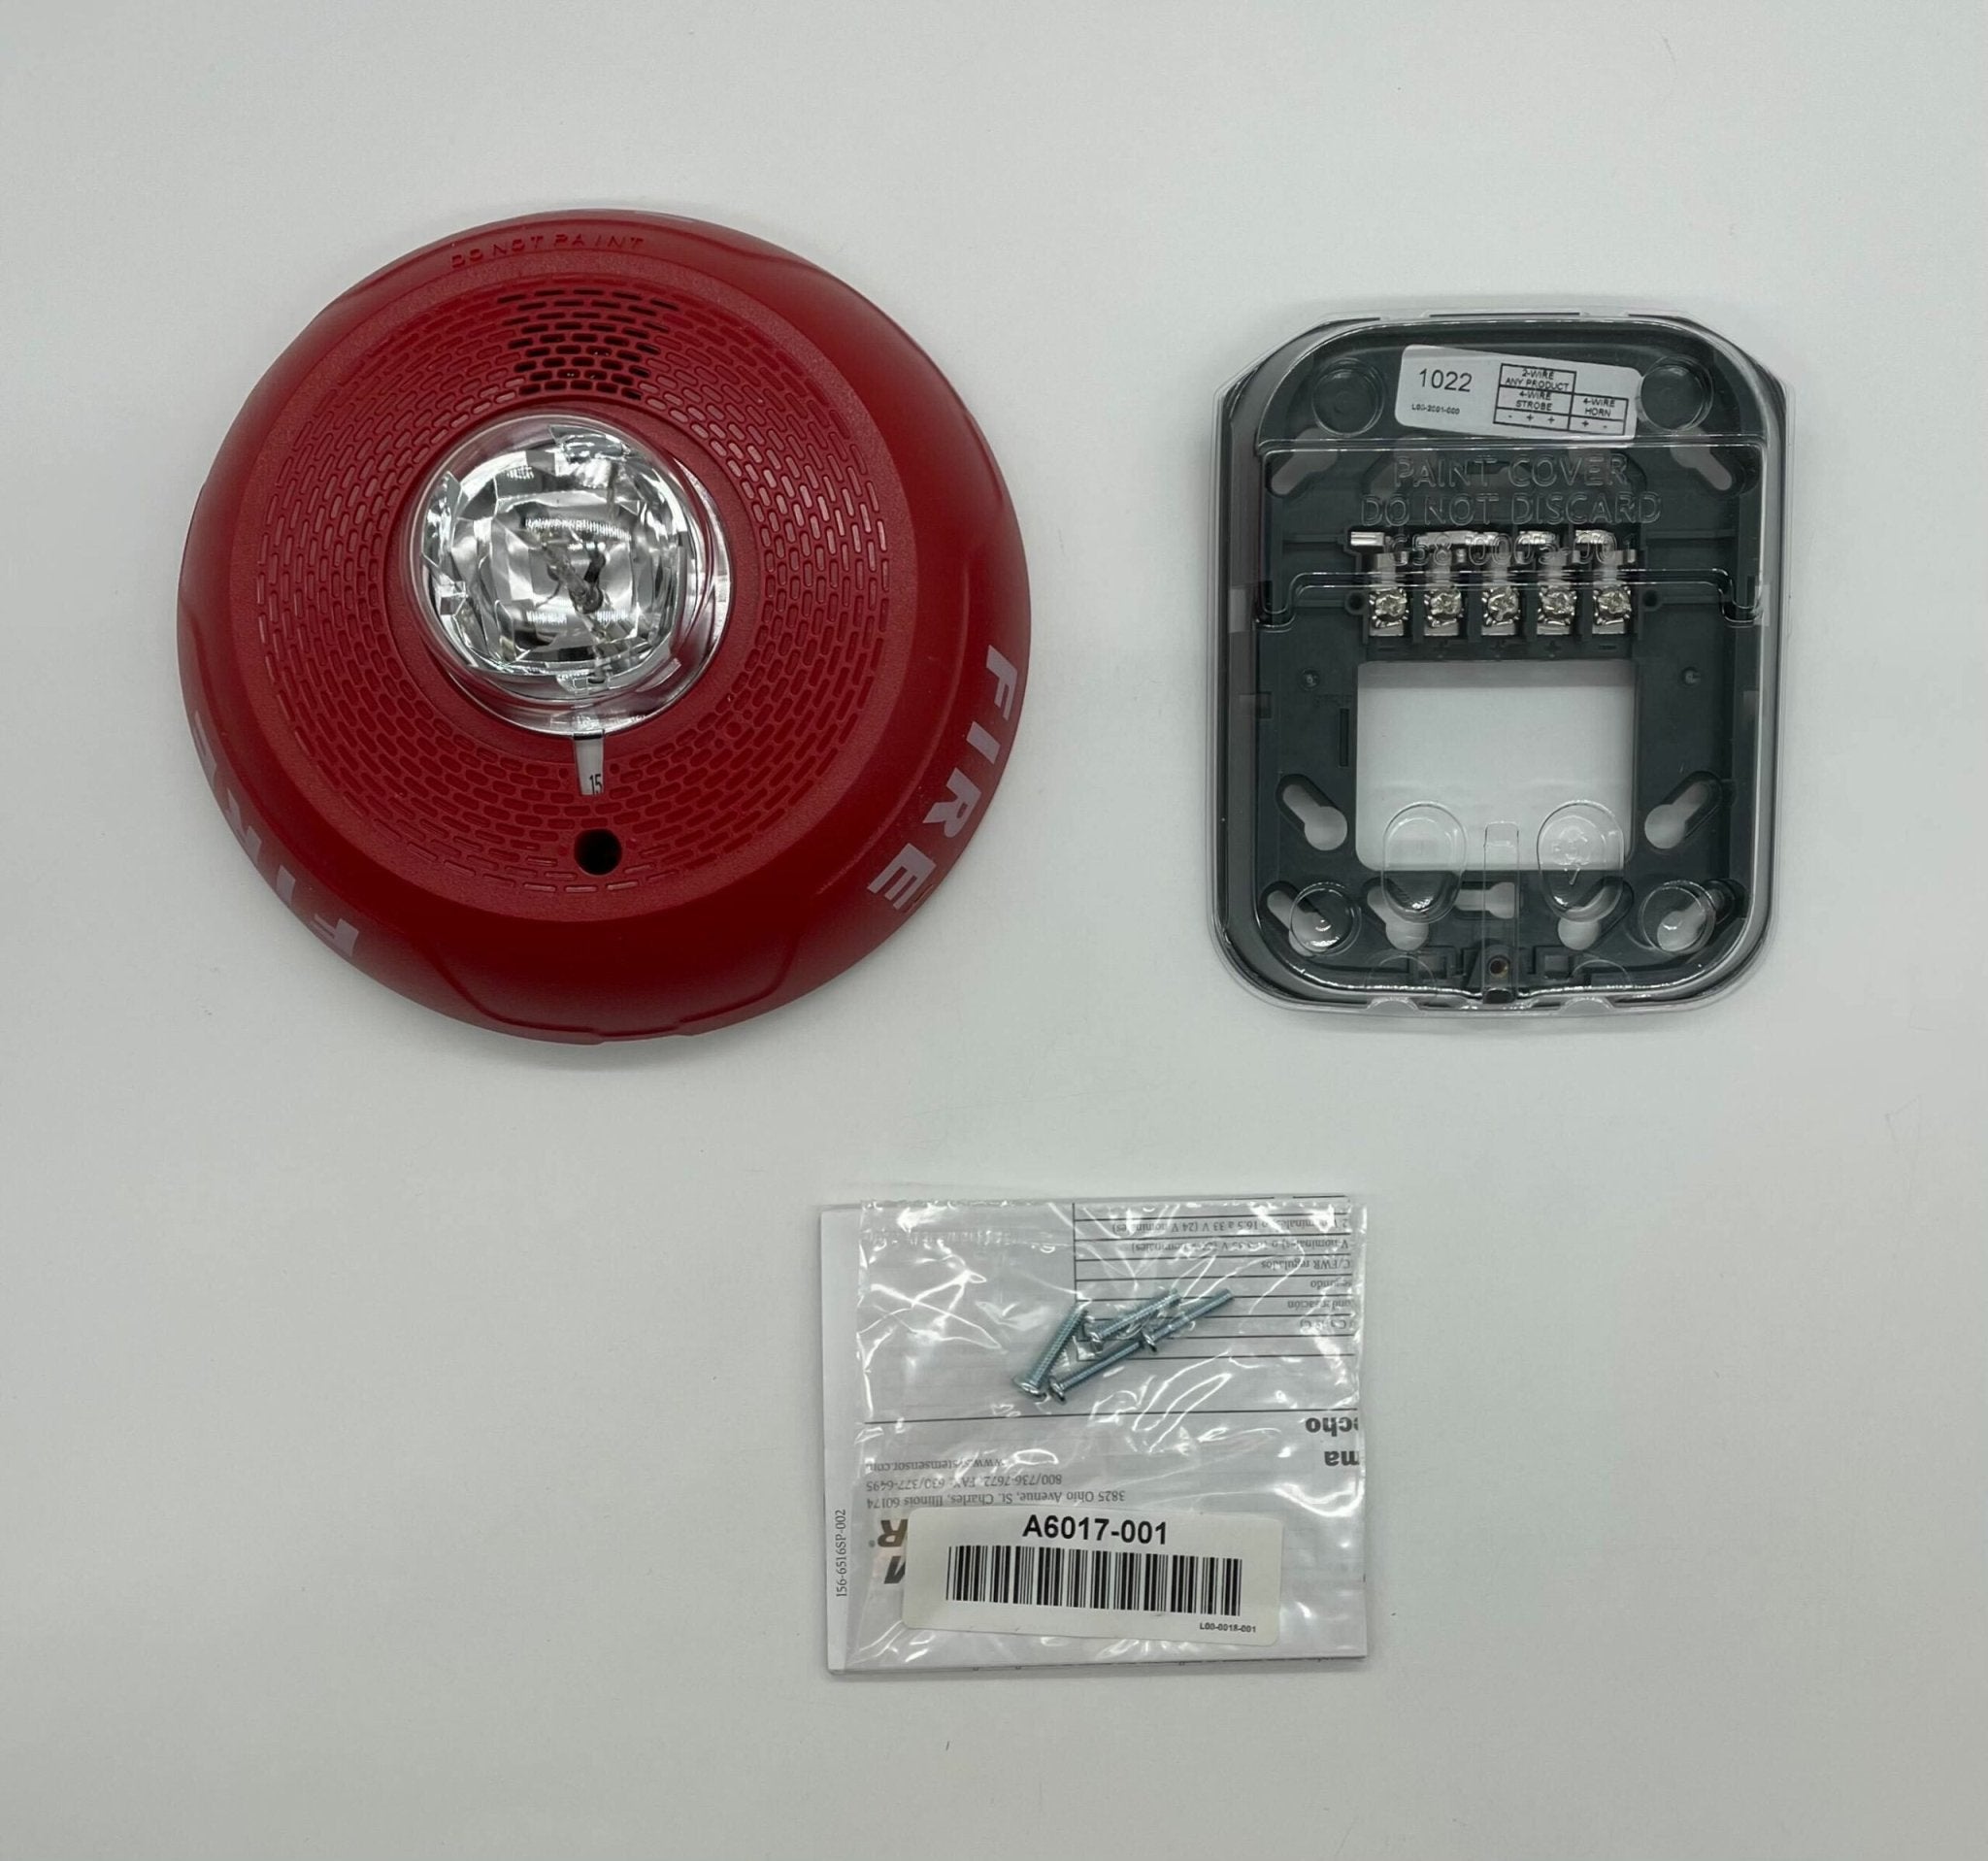 System Sensor PC4RL Horn Strobe Red For Ceiling - The Fire Alarm Supplier